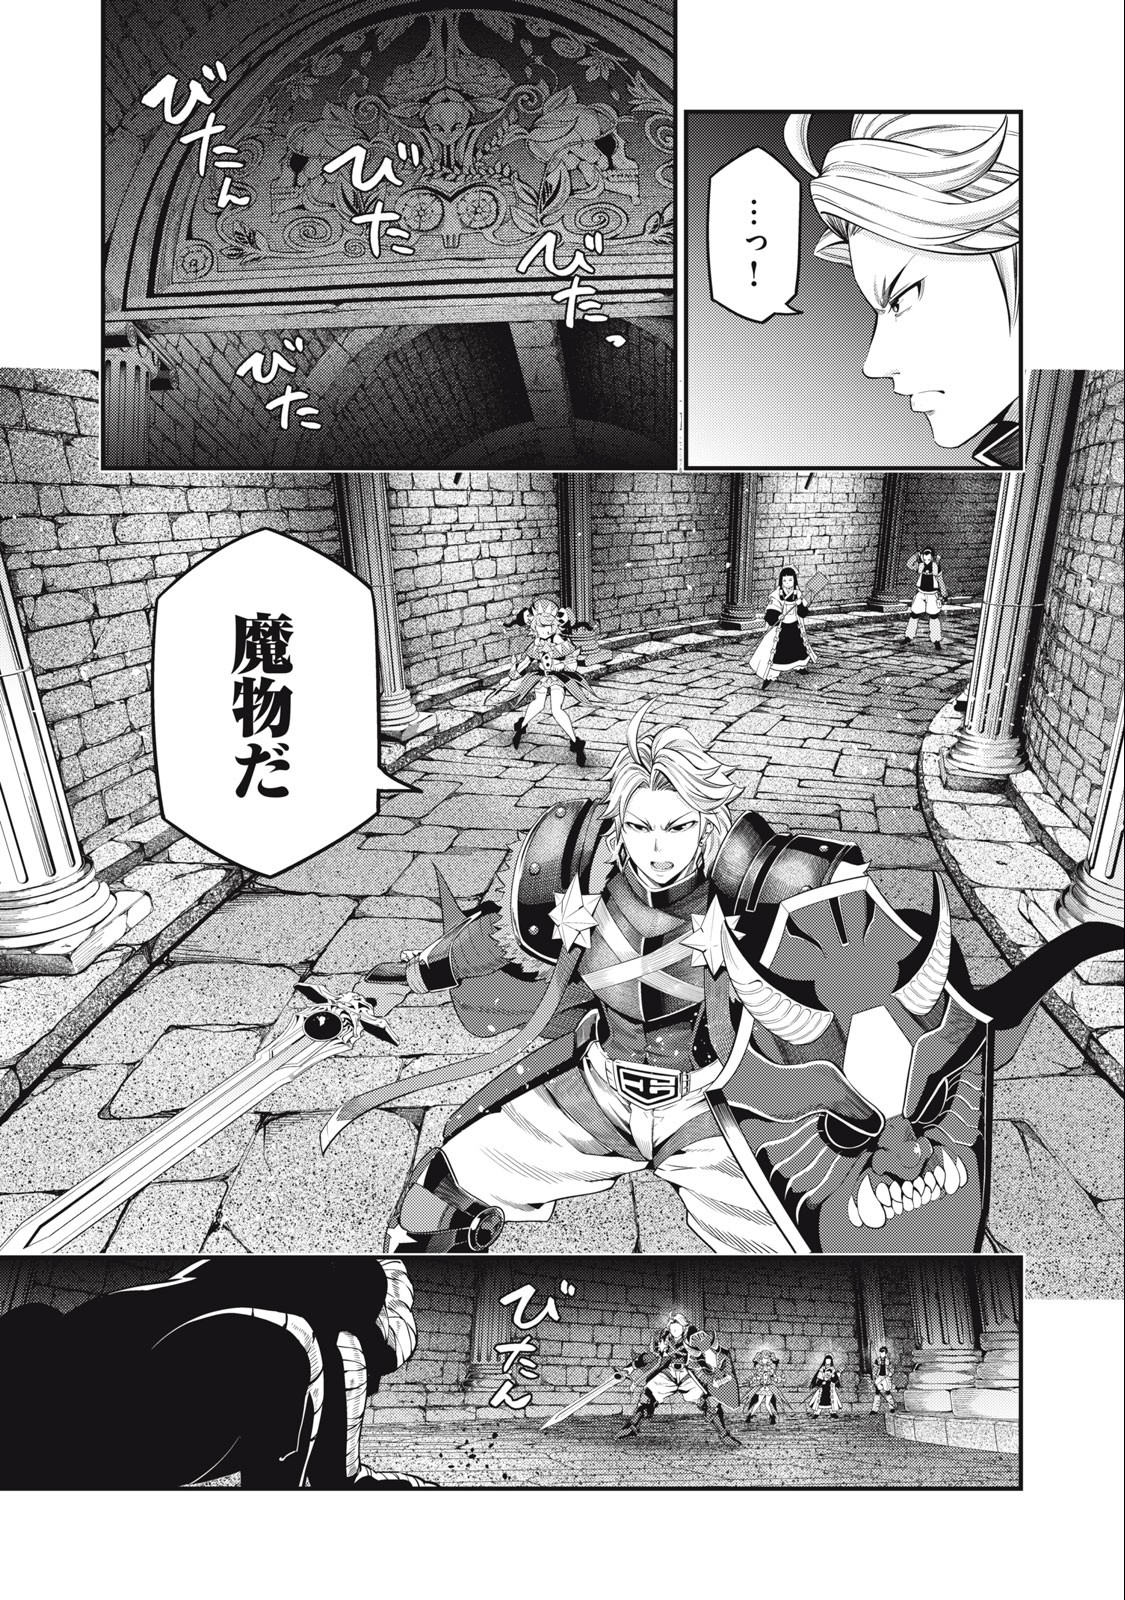 追放された転生重騎士はゲーム知識で無双する 第51話 - Page 5